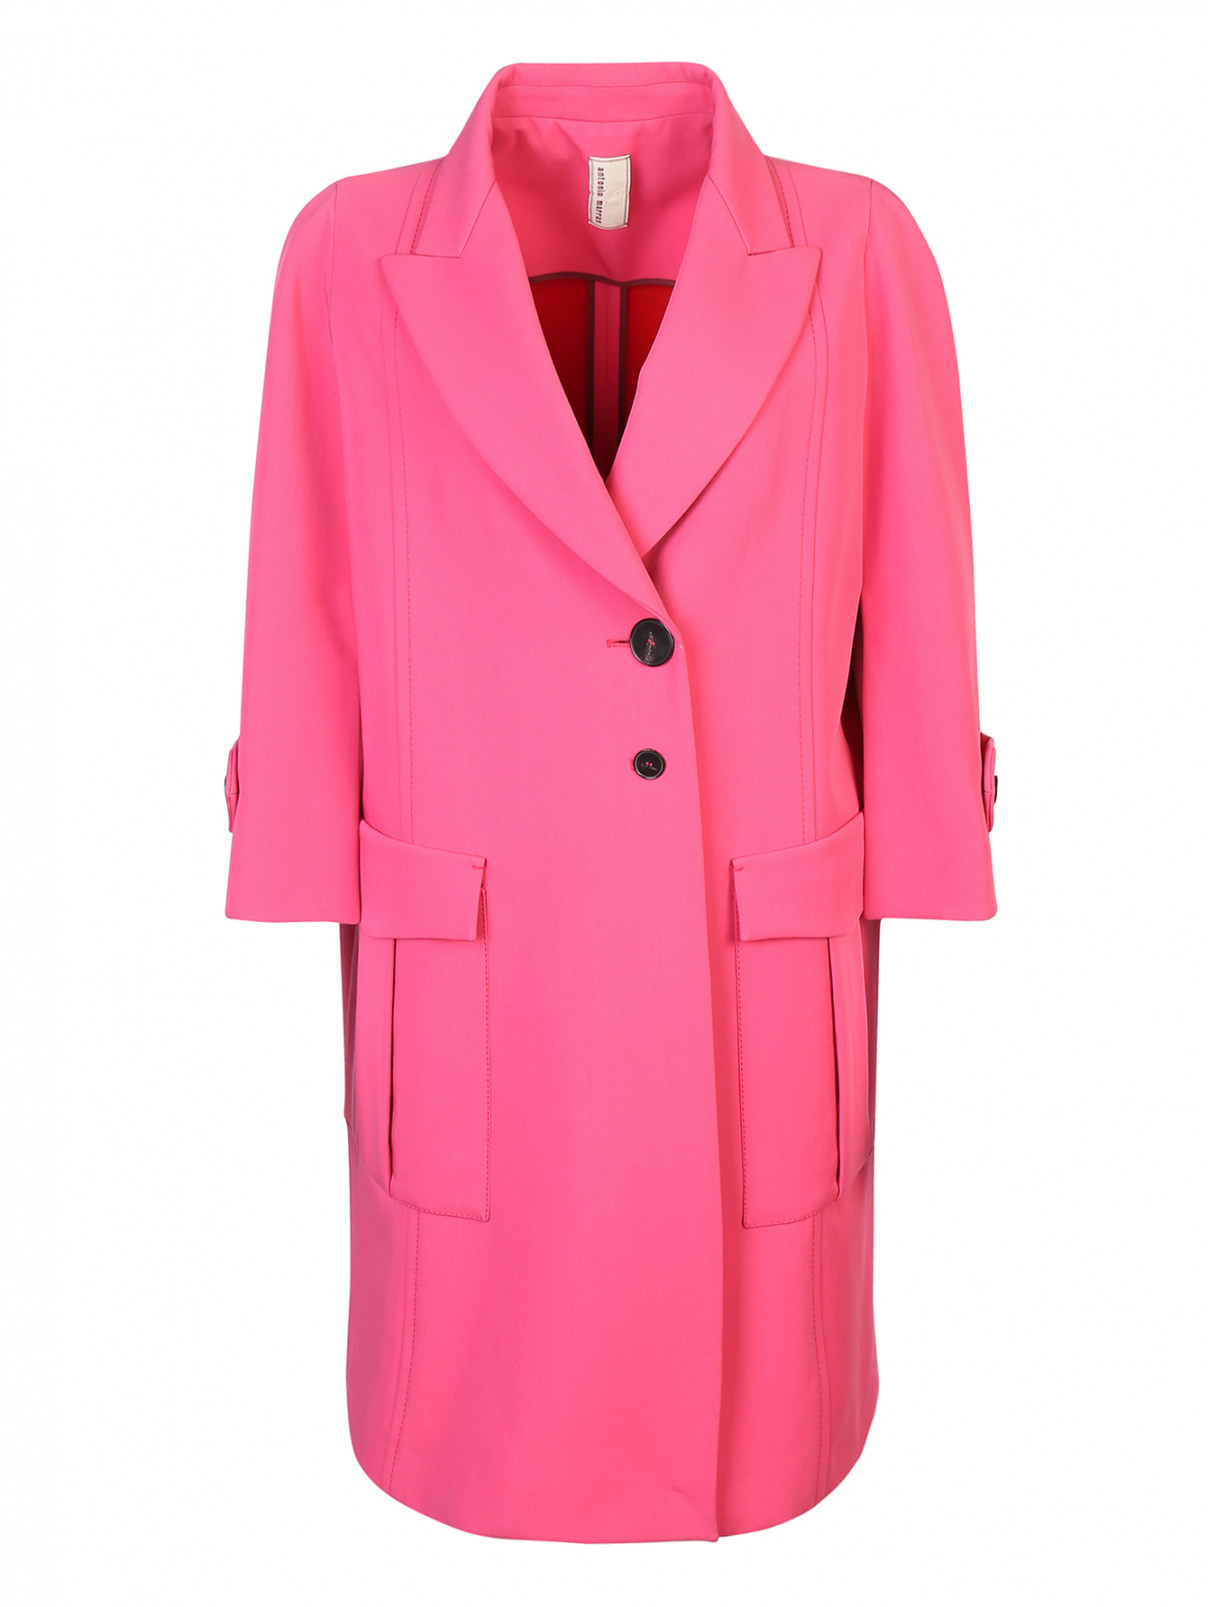 Пальто из шерсти, с накладными карманами Antonio Marras  –  Общий вид  – Цвет:  Розовый